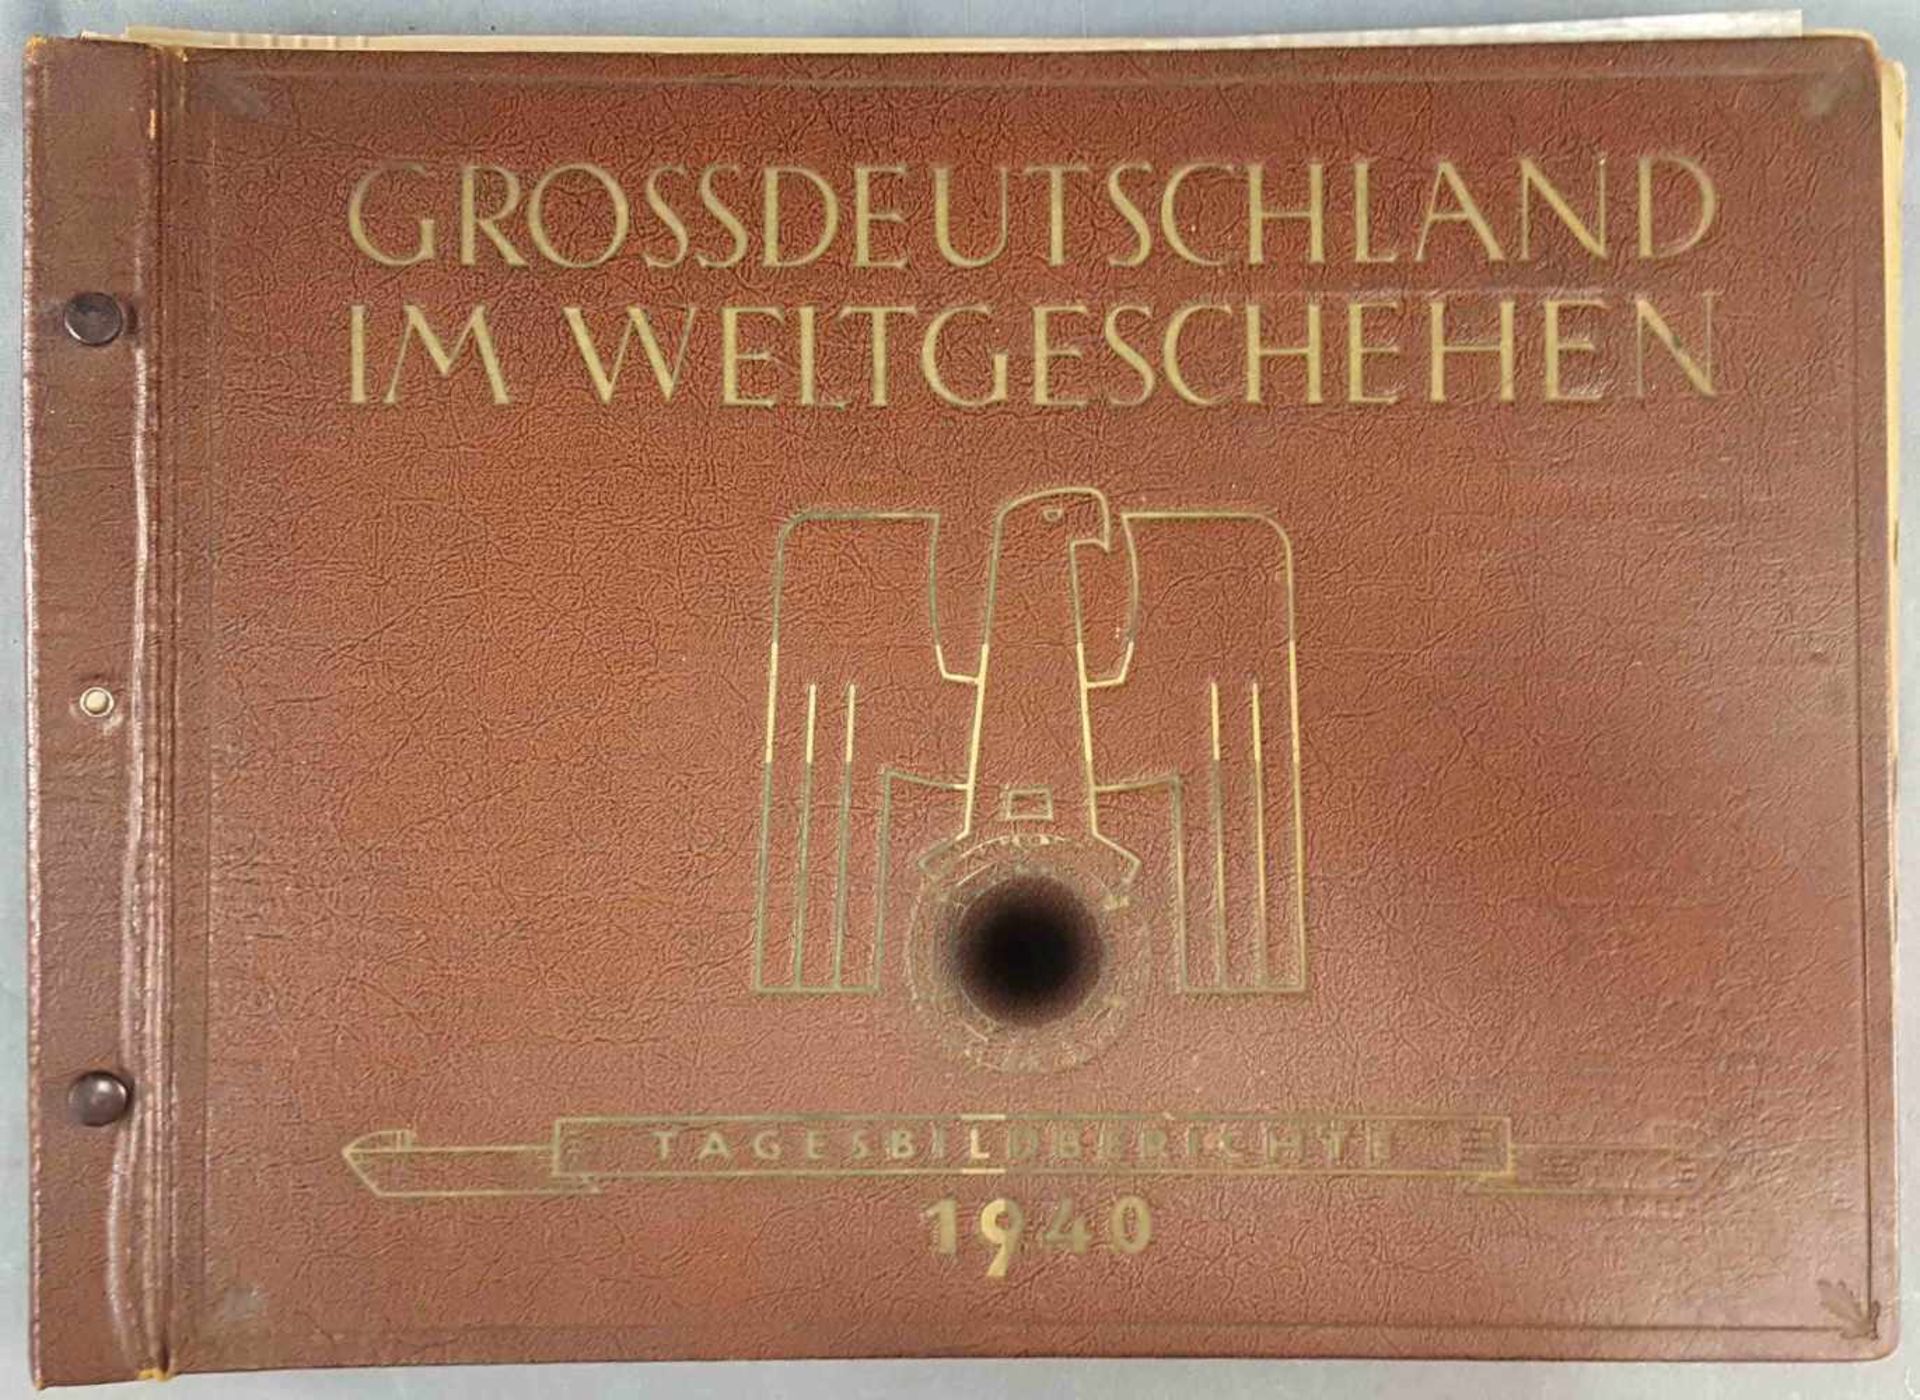 "GROSSDEUTSCHLAND IM WELTGESCHEHEN, Tagesbildberichte 1940"